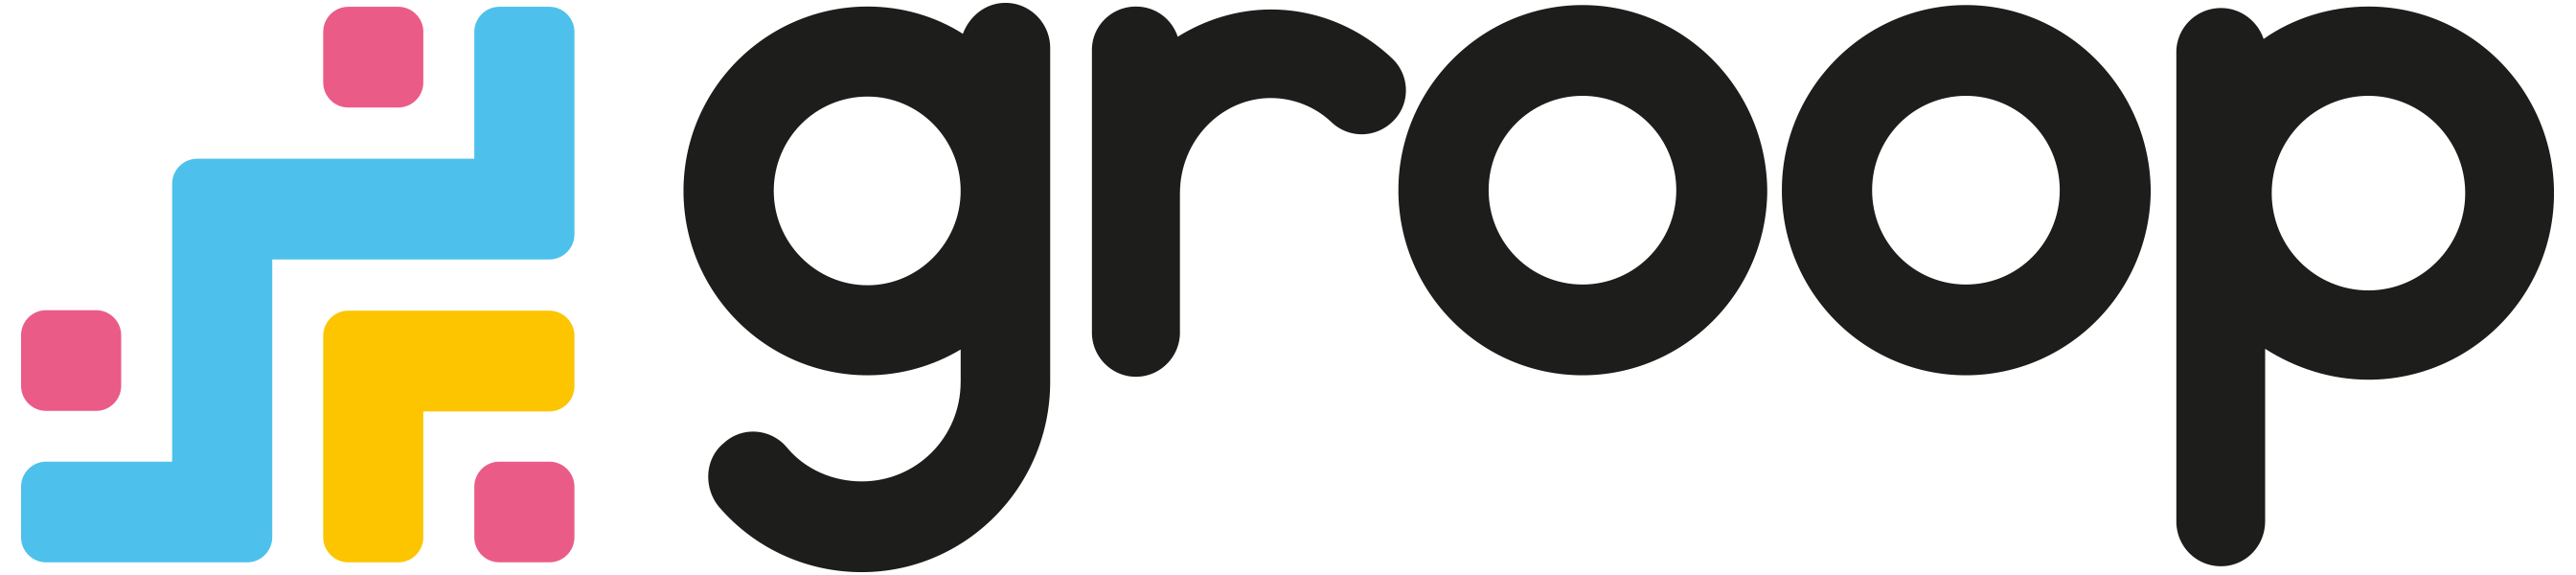 Groop Logo Large